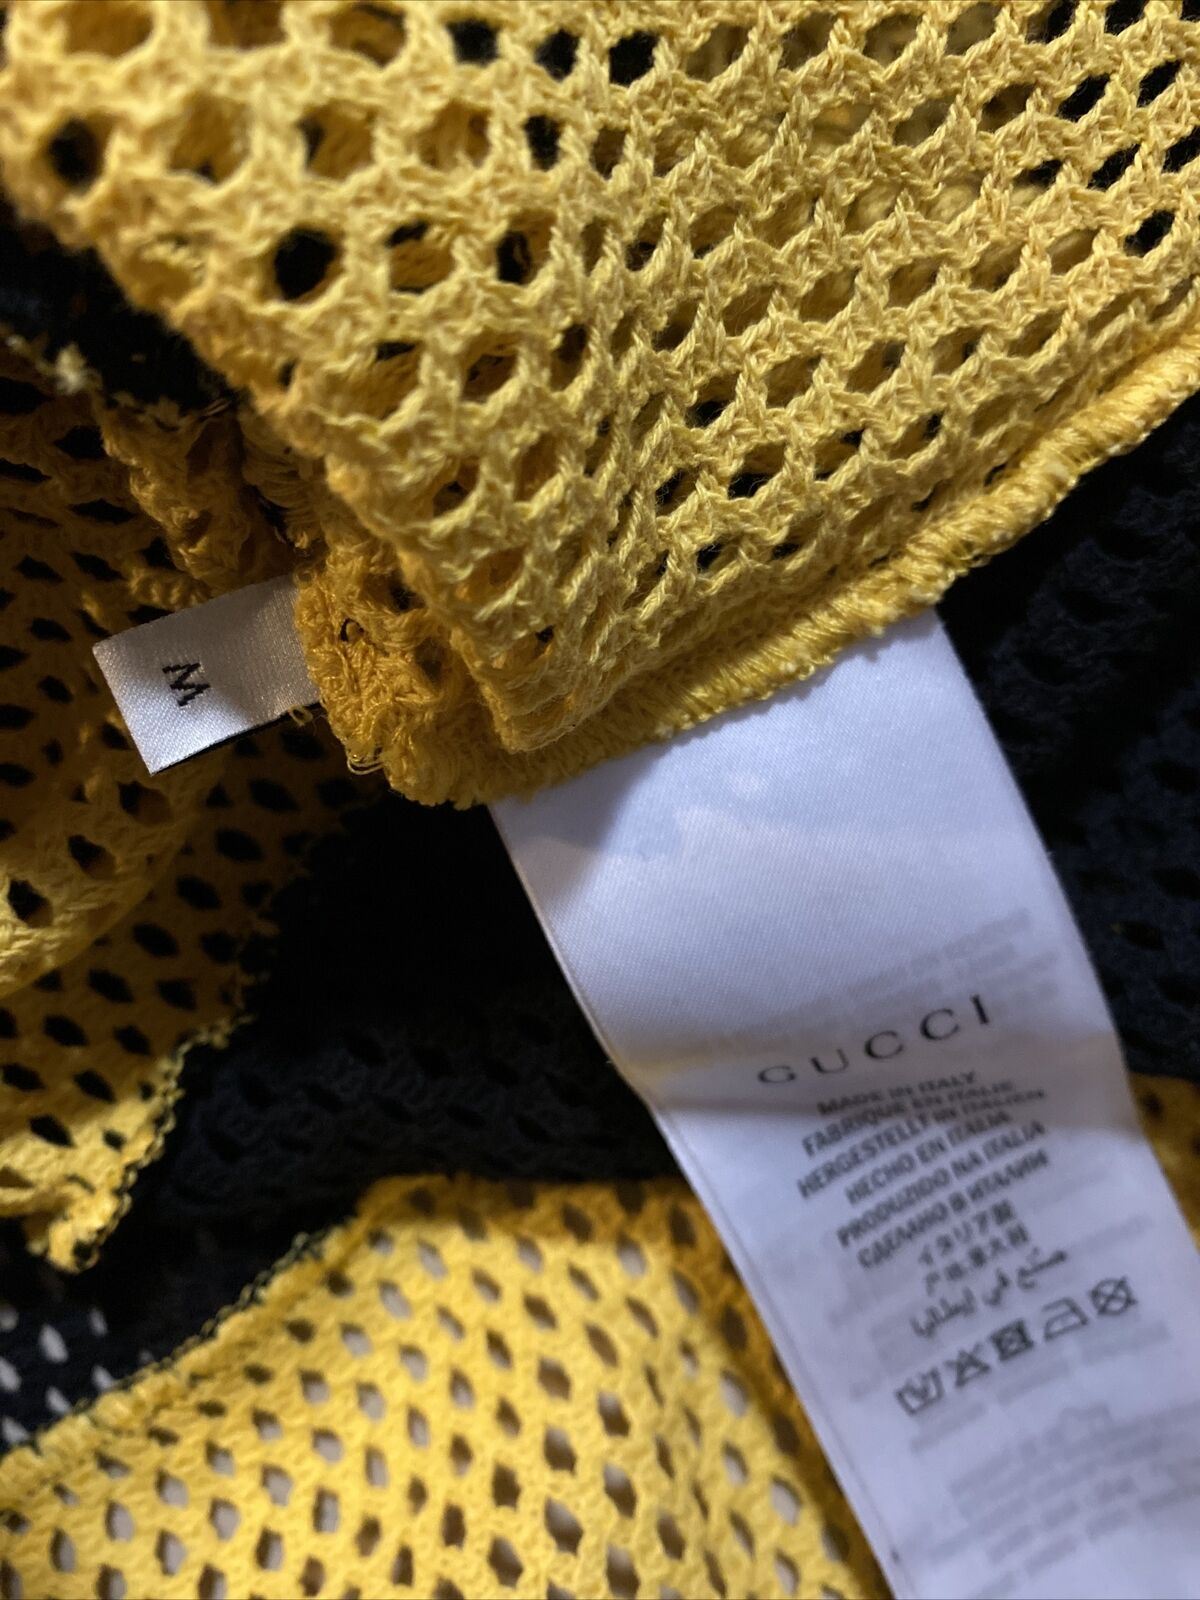 Neues Gucci Herren-Kurzarm-T-Shirt für 680 $ Gelb/Schwarz Größe S Italien